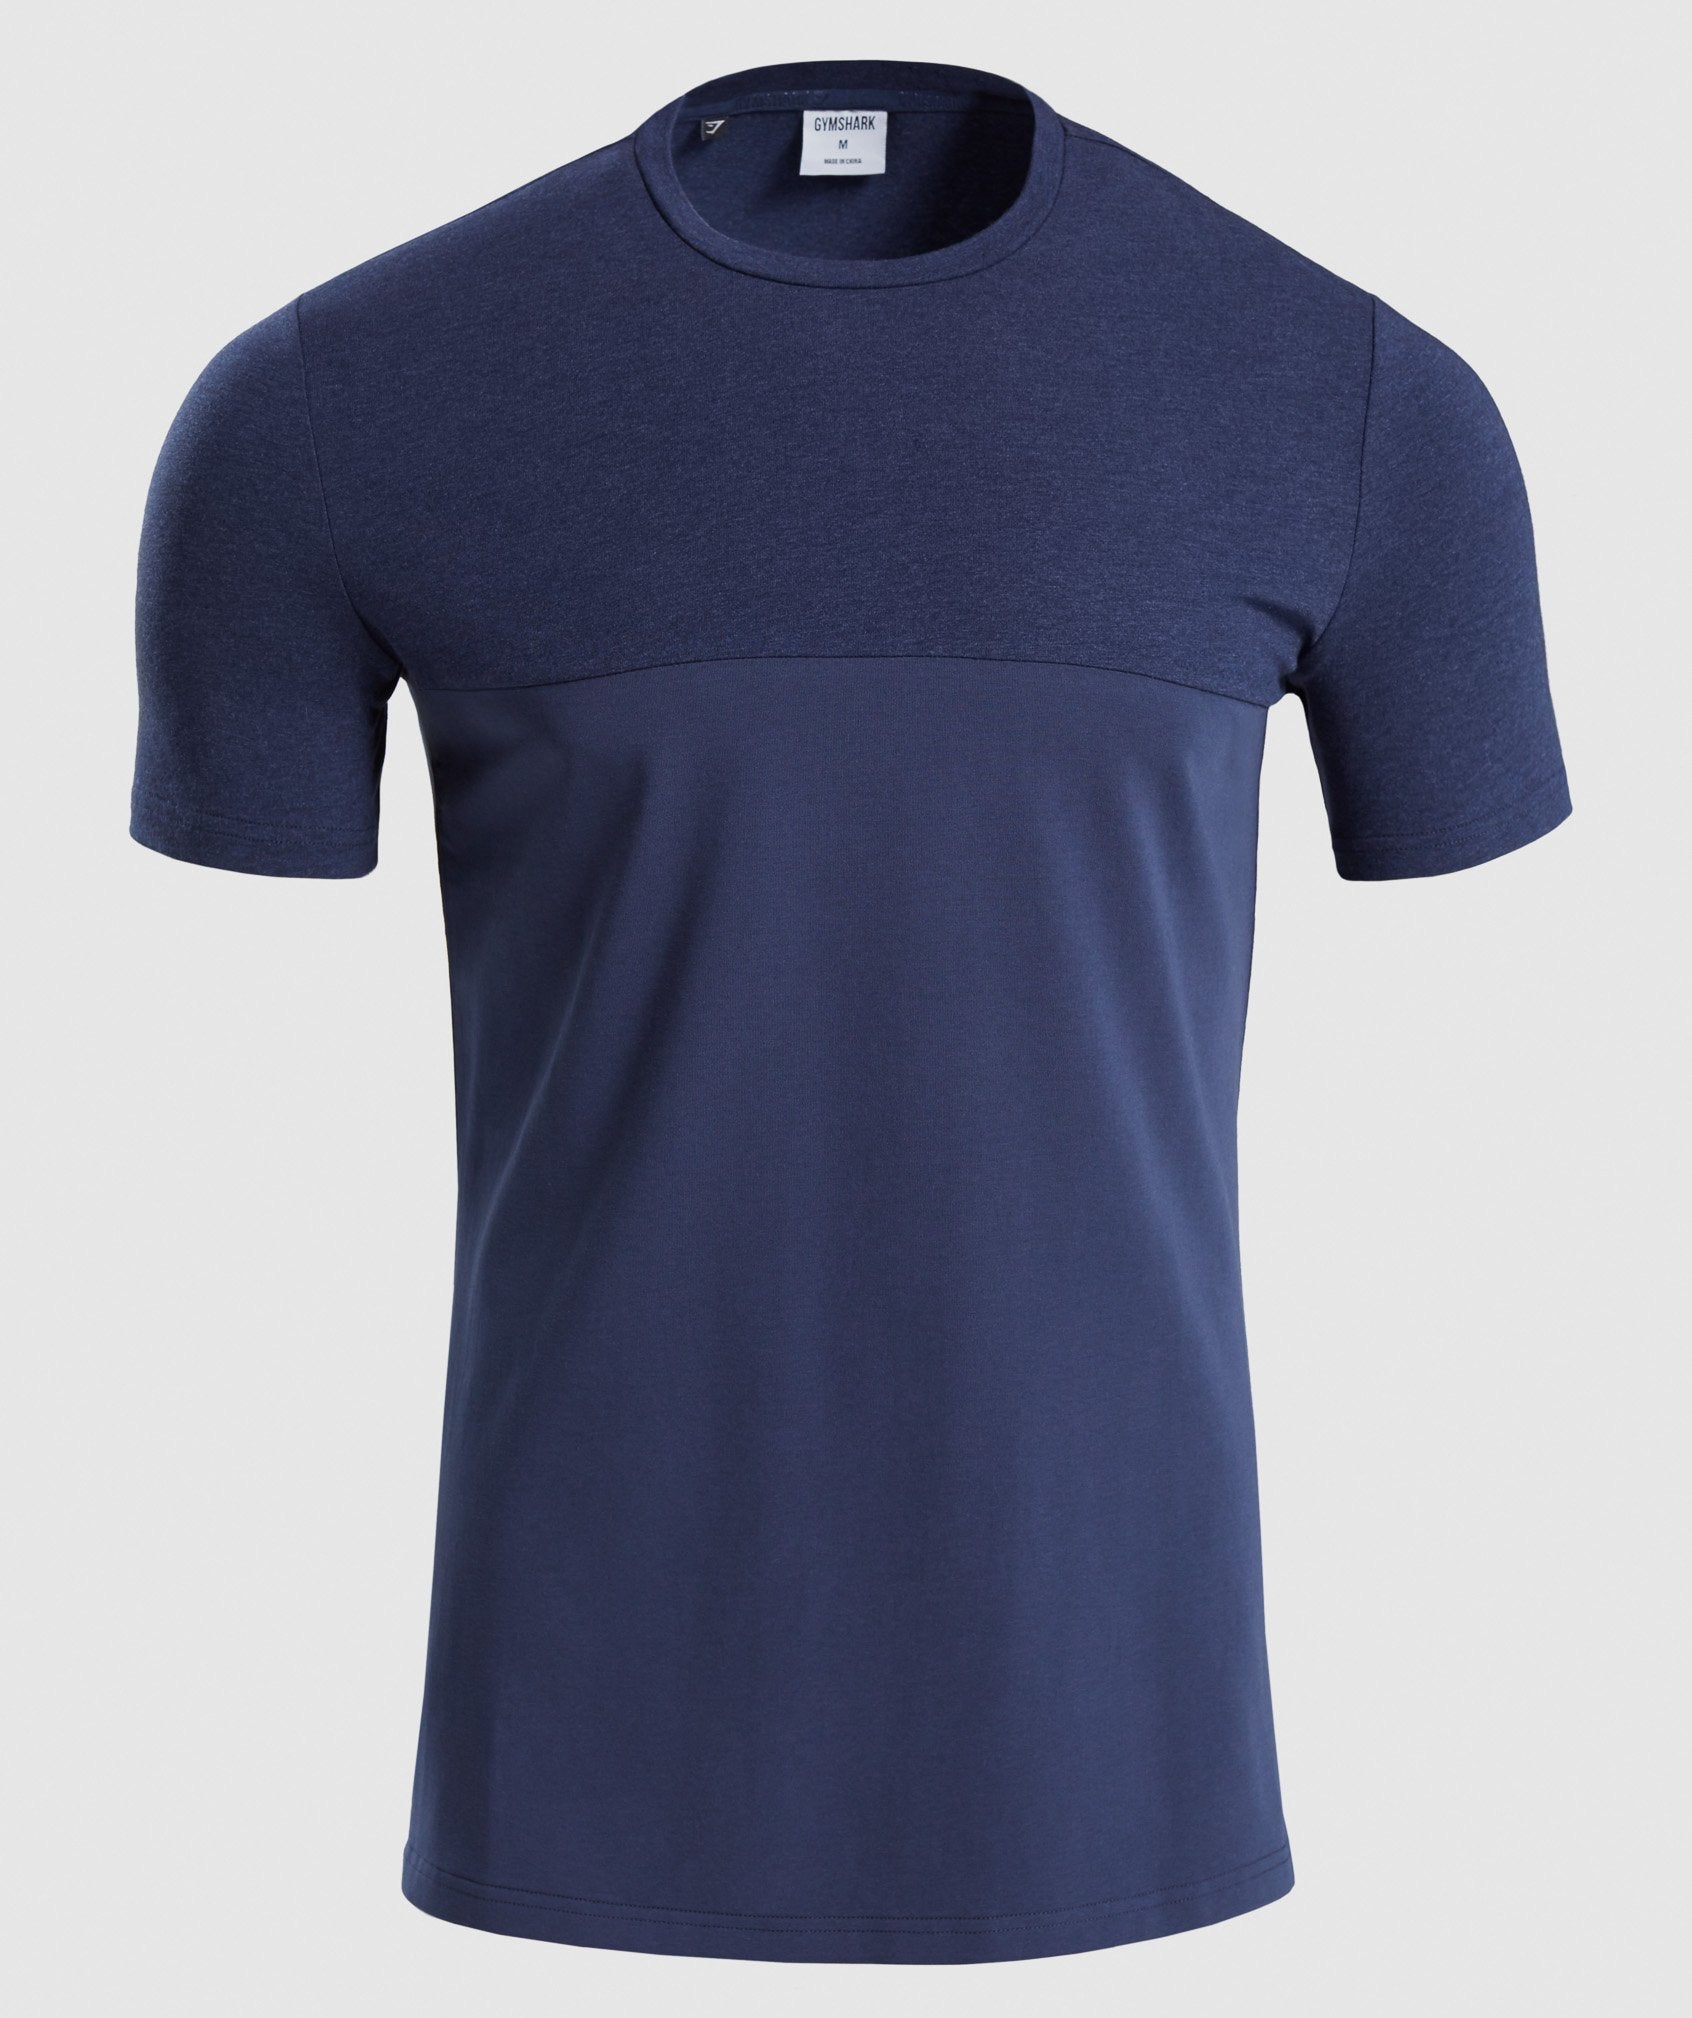 Revive T-Shirt in Dark Blue/Dark Blue Marl